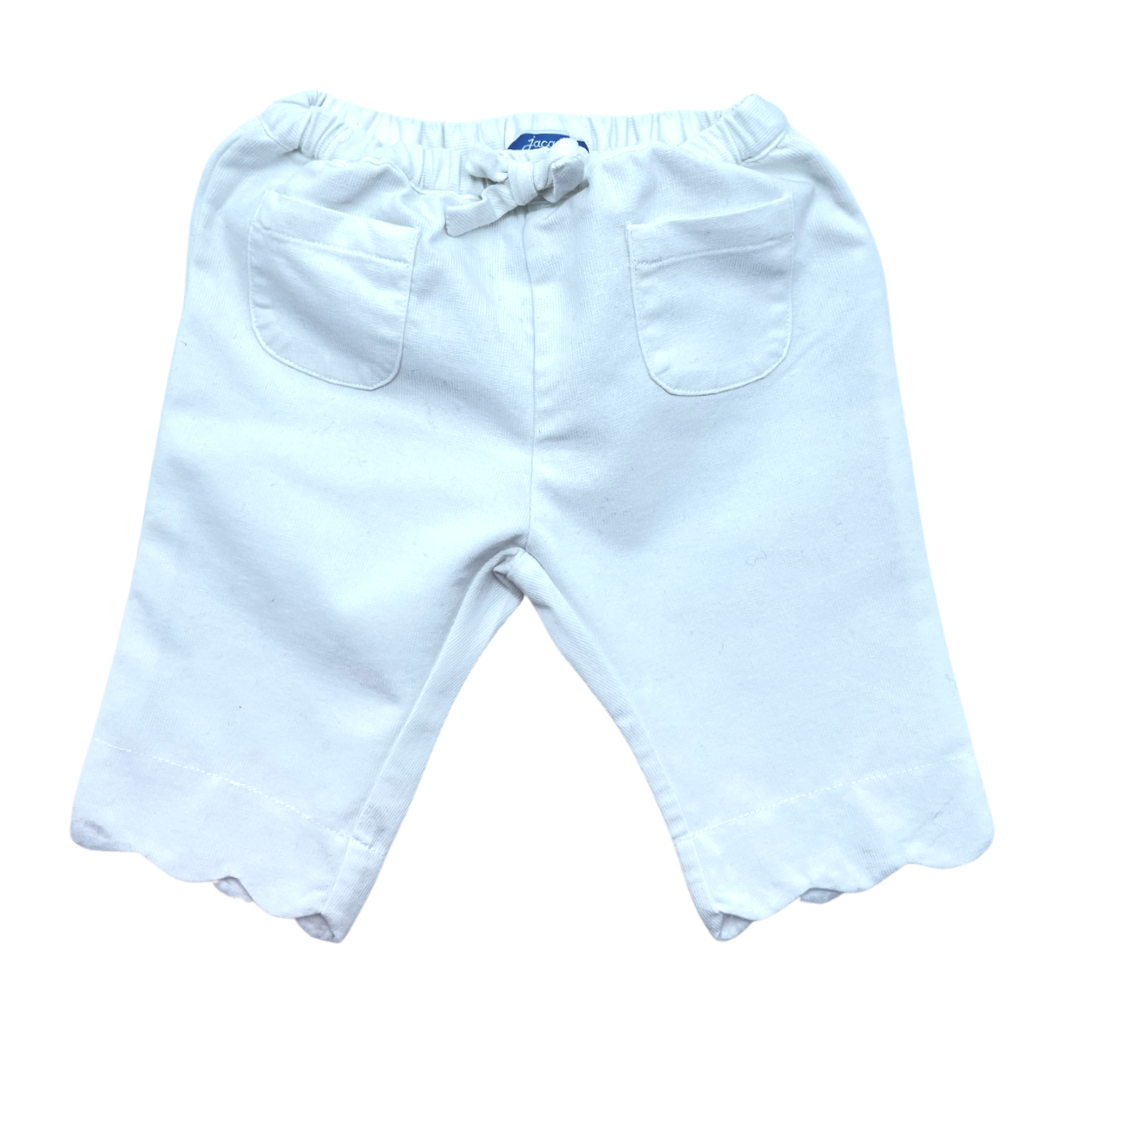 JACADI - White pants - 1 year old